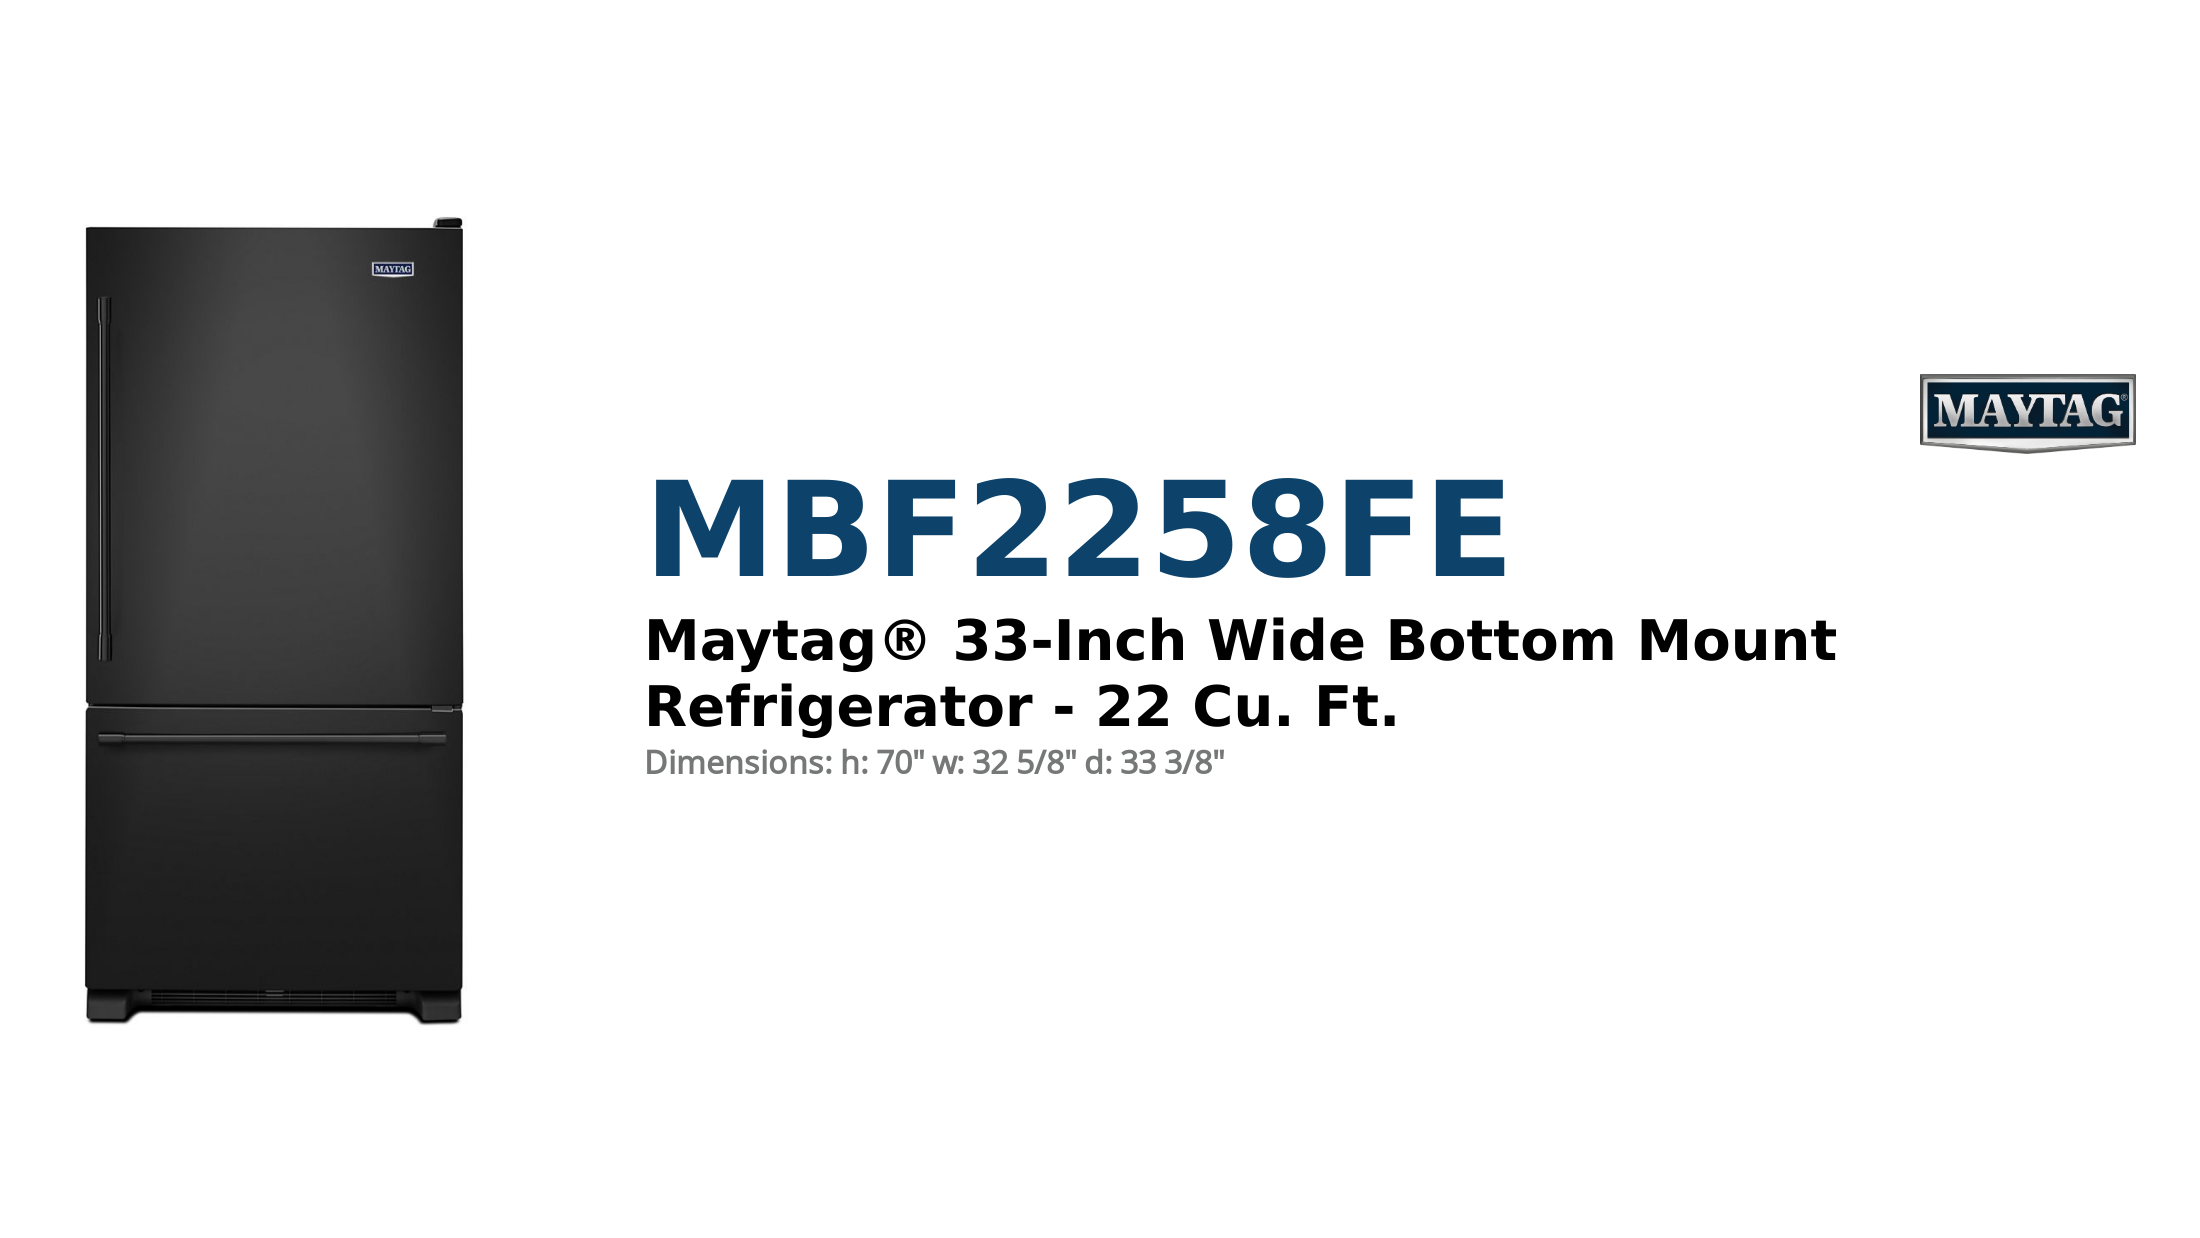 Maytag® 33-Inch Wide Bottom Mount Refrigerator - 22 Cu. Ft.